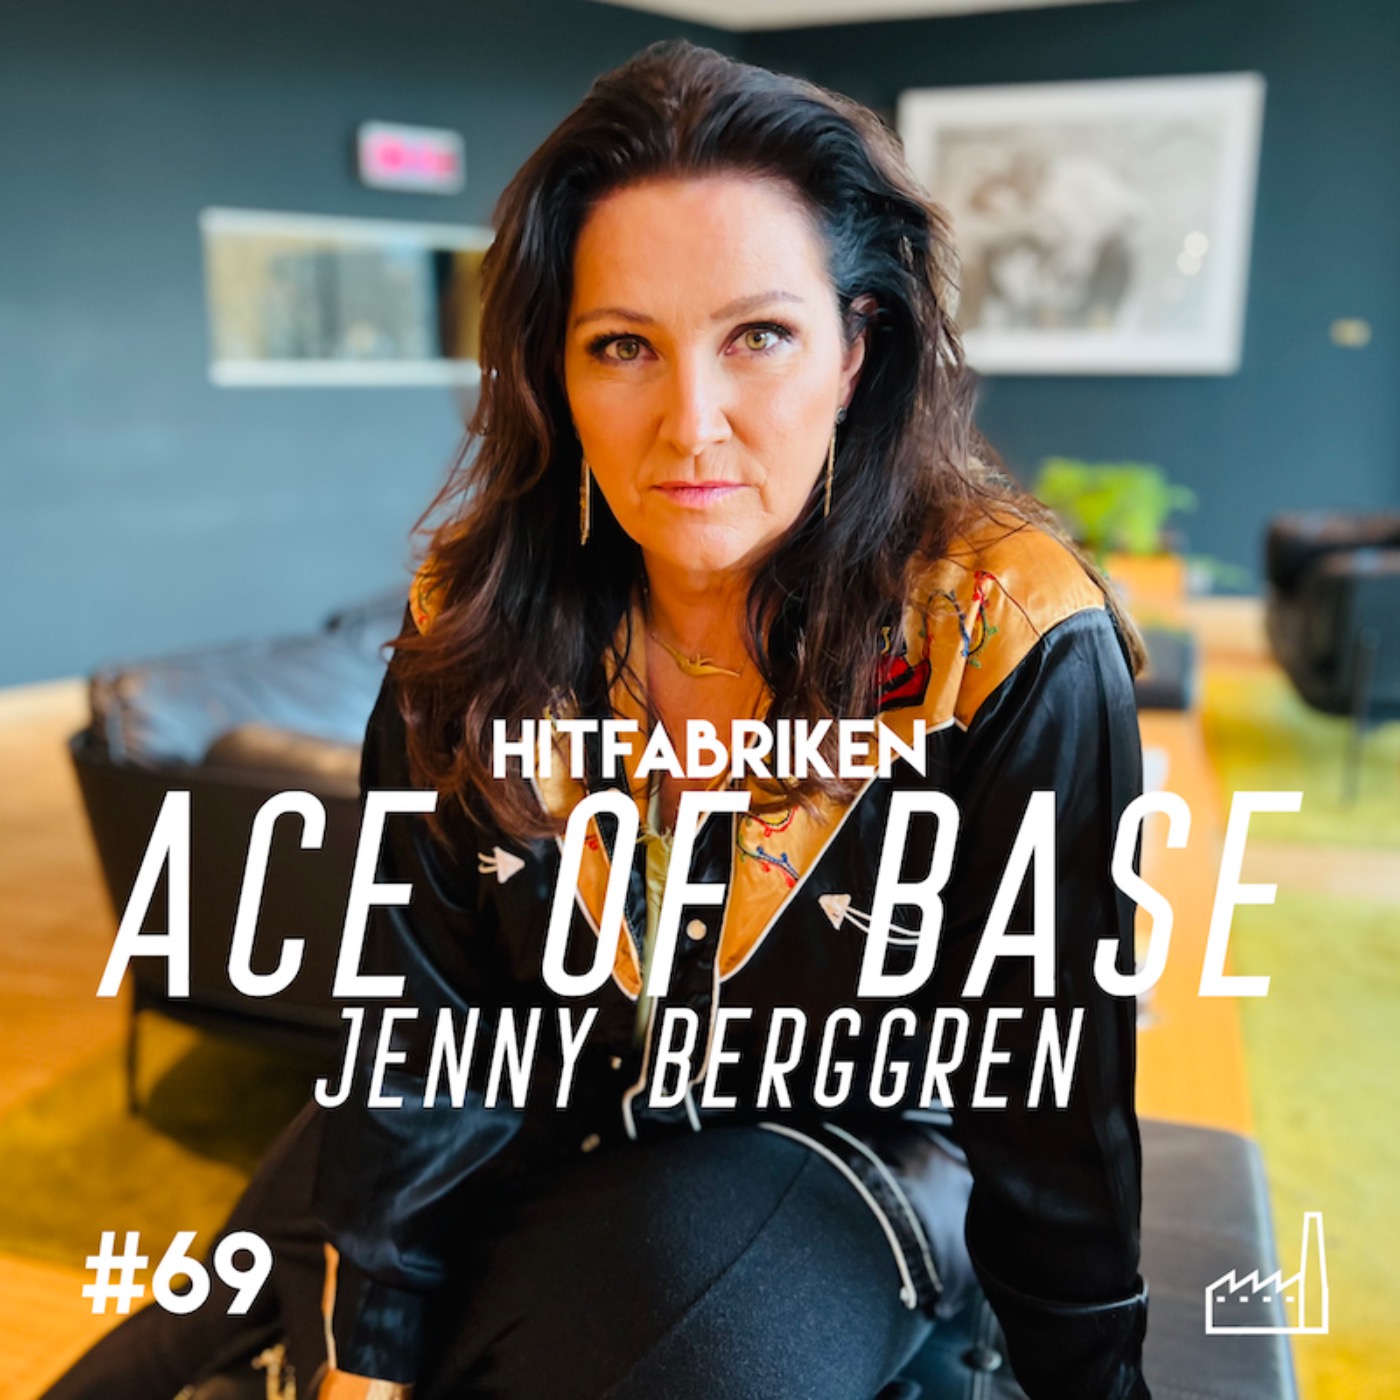 69. Ace of Base - Jenny Berggren